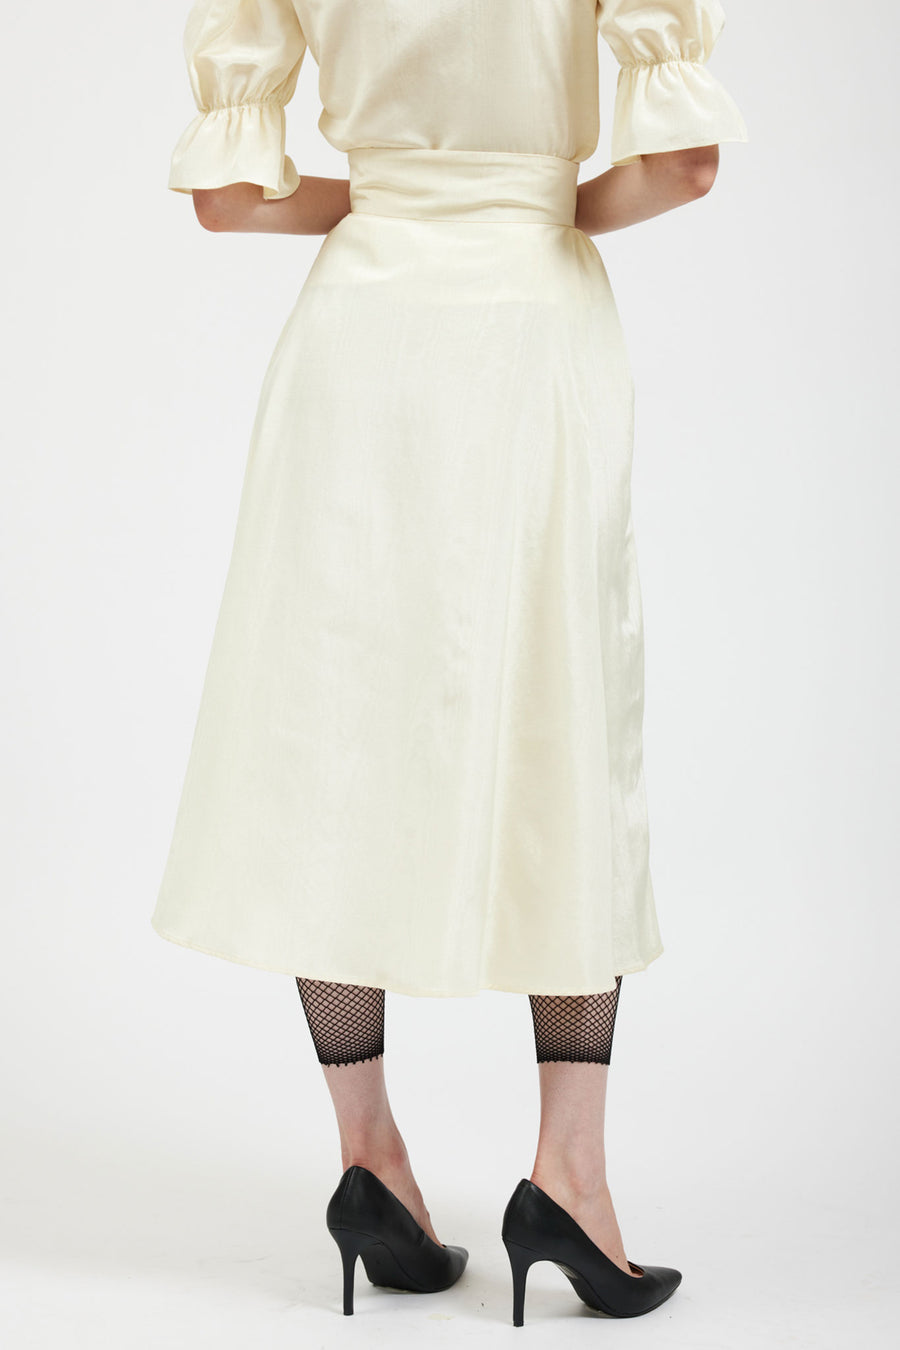 BATSHEVA - Bella Skirt in Cream Moiré